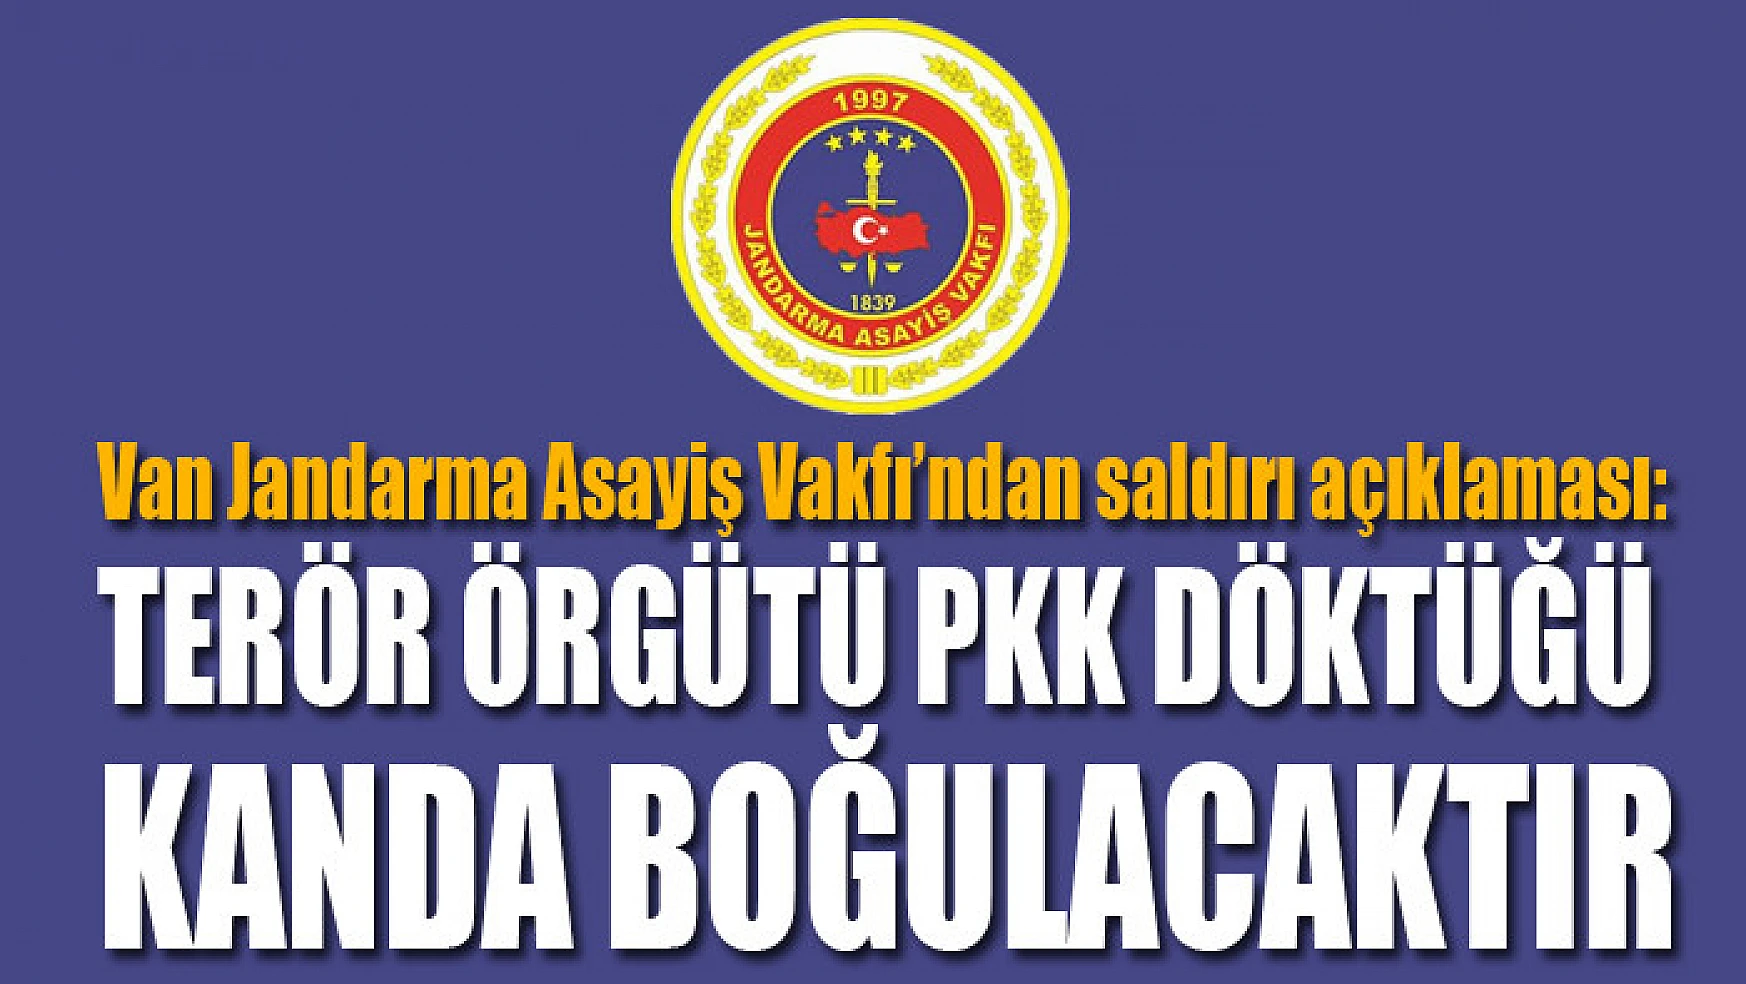 Van Jandarma Asayiş Vakfı'ndan saldırı açıklaması: Terör örgütü PKK döktüğü kanda boğulacaktır